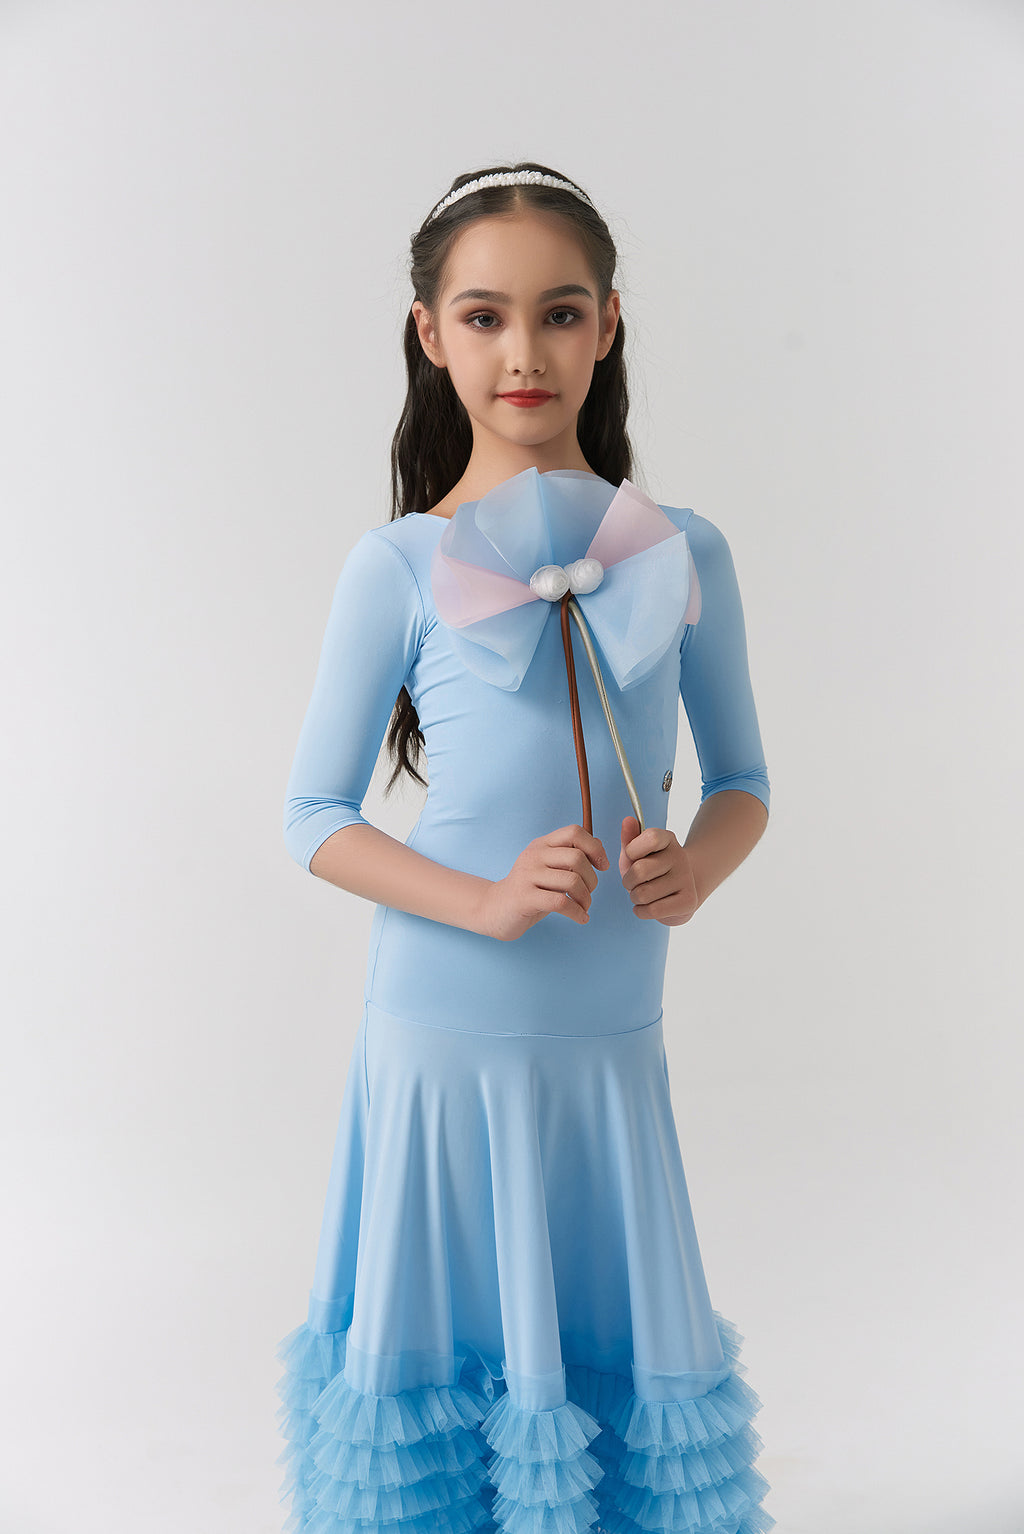 DQ-2312 Kid High-End Customized Fanfare Flair Dress